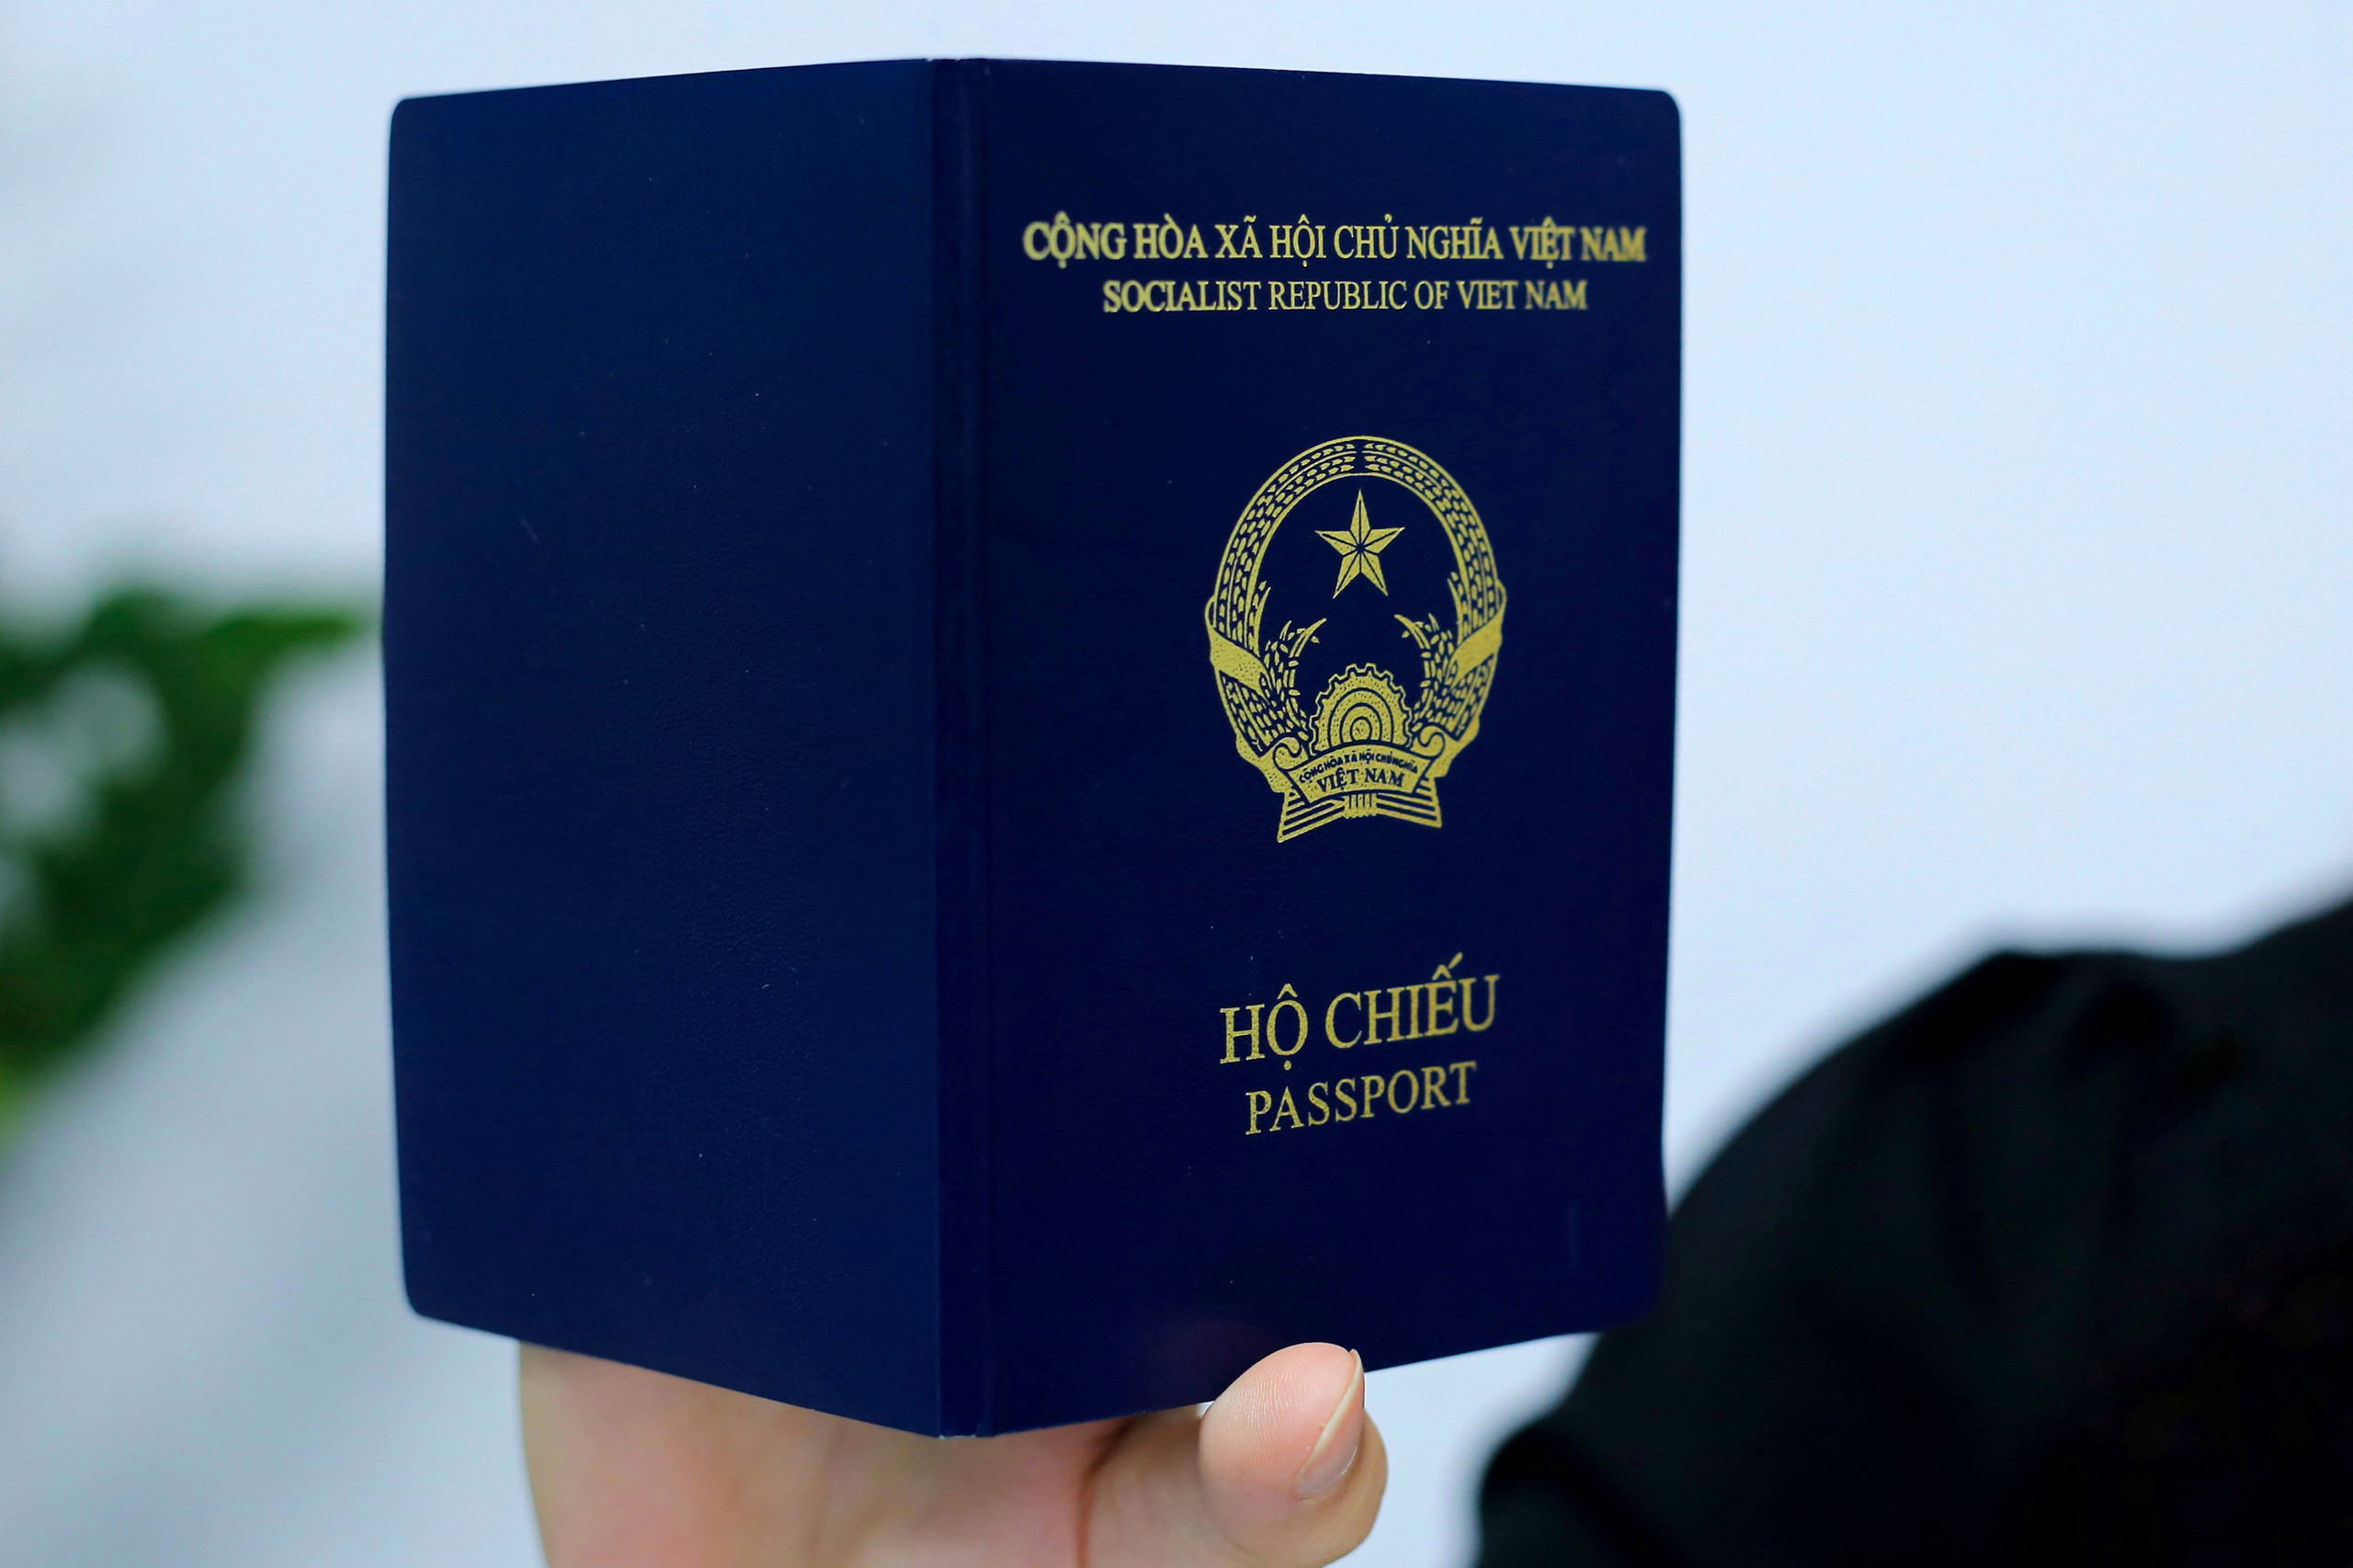 Đức chưa chấp nhận hộ chiếu mới của Việt Nam vì thiếu nơi sinh